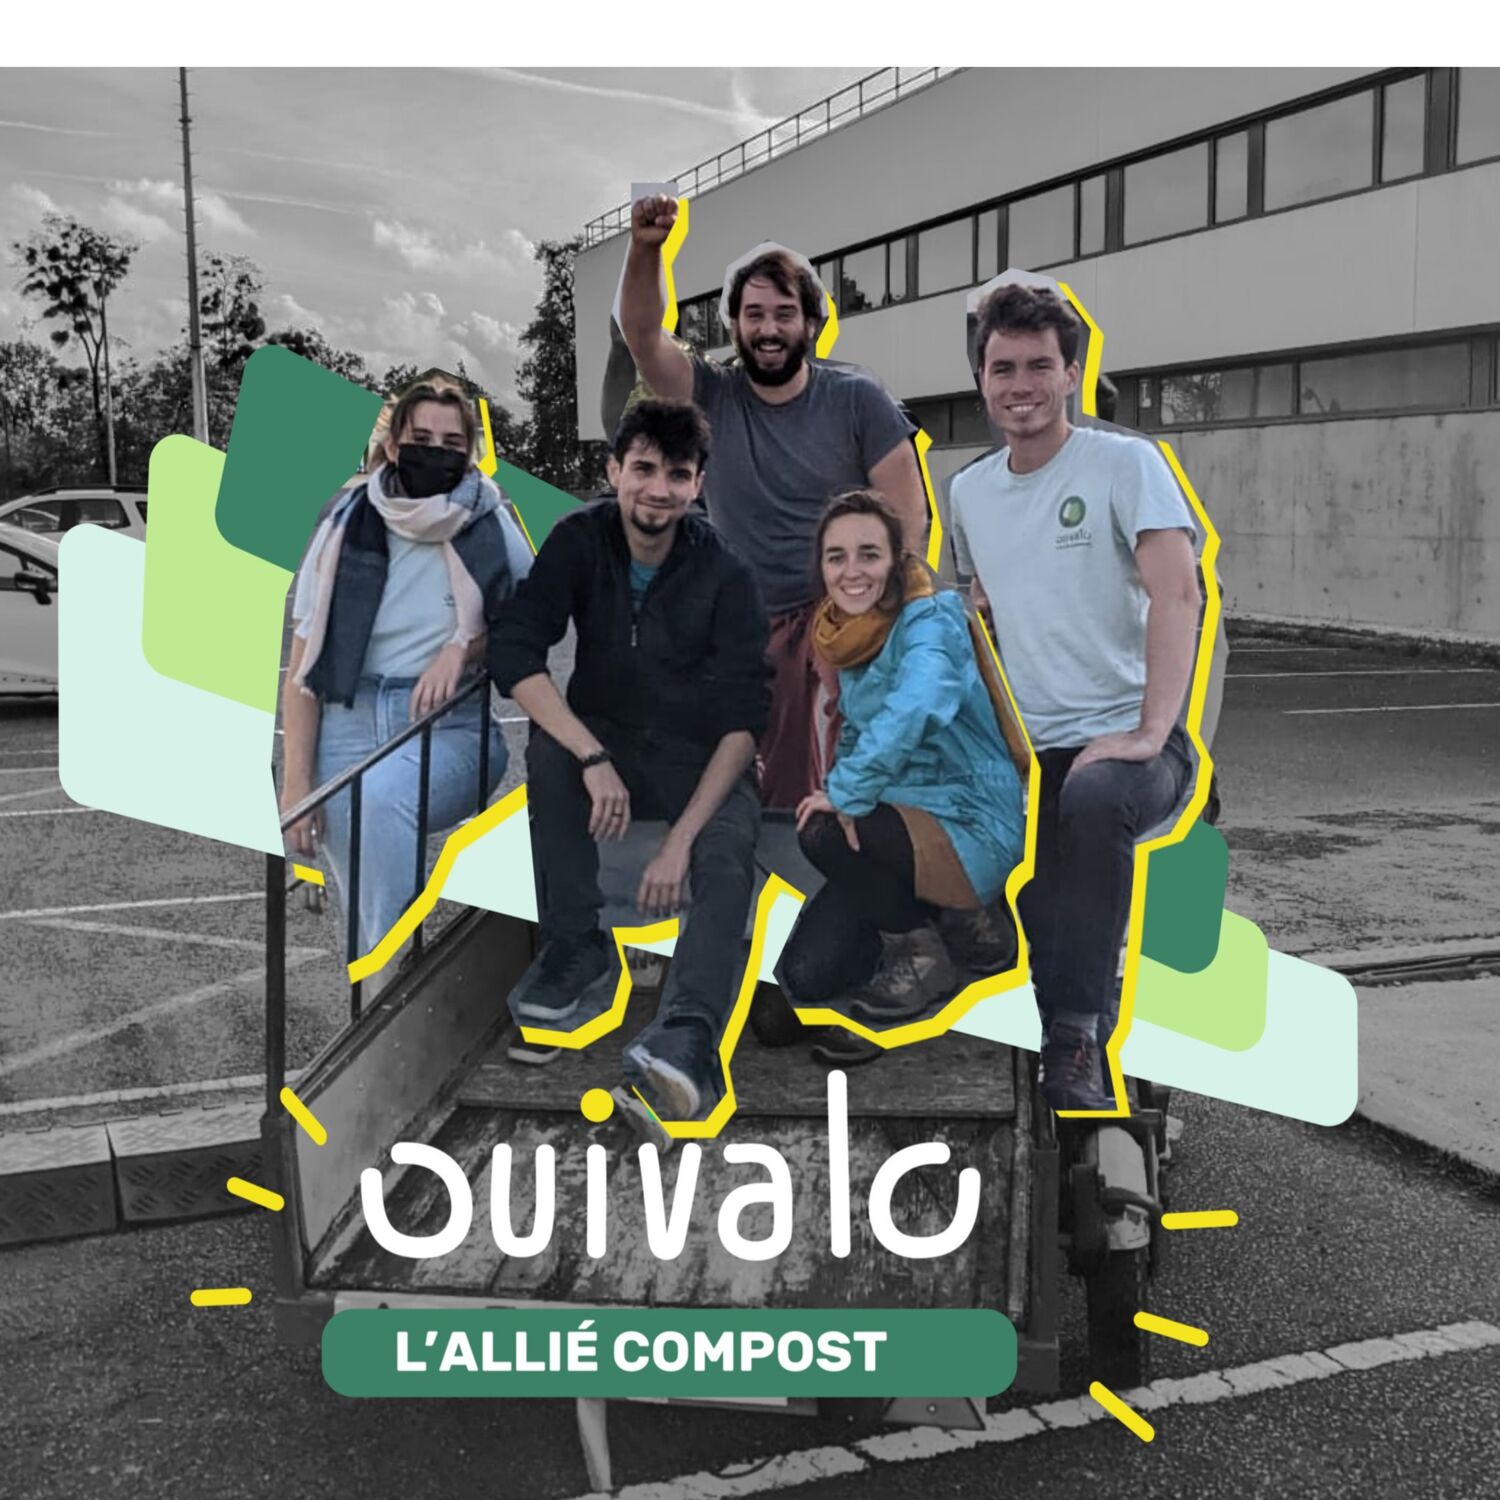 Ouivalo, l'allié compost à Nantes